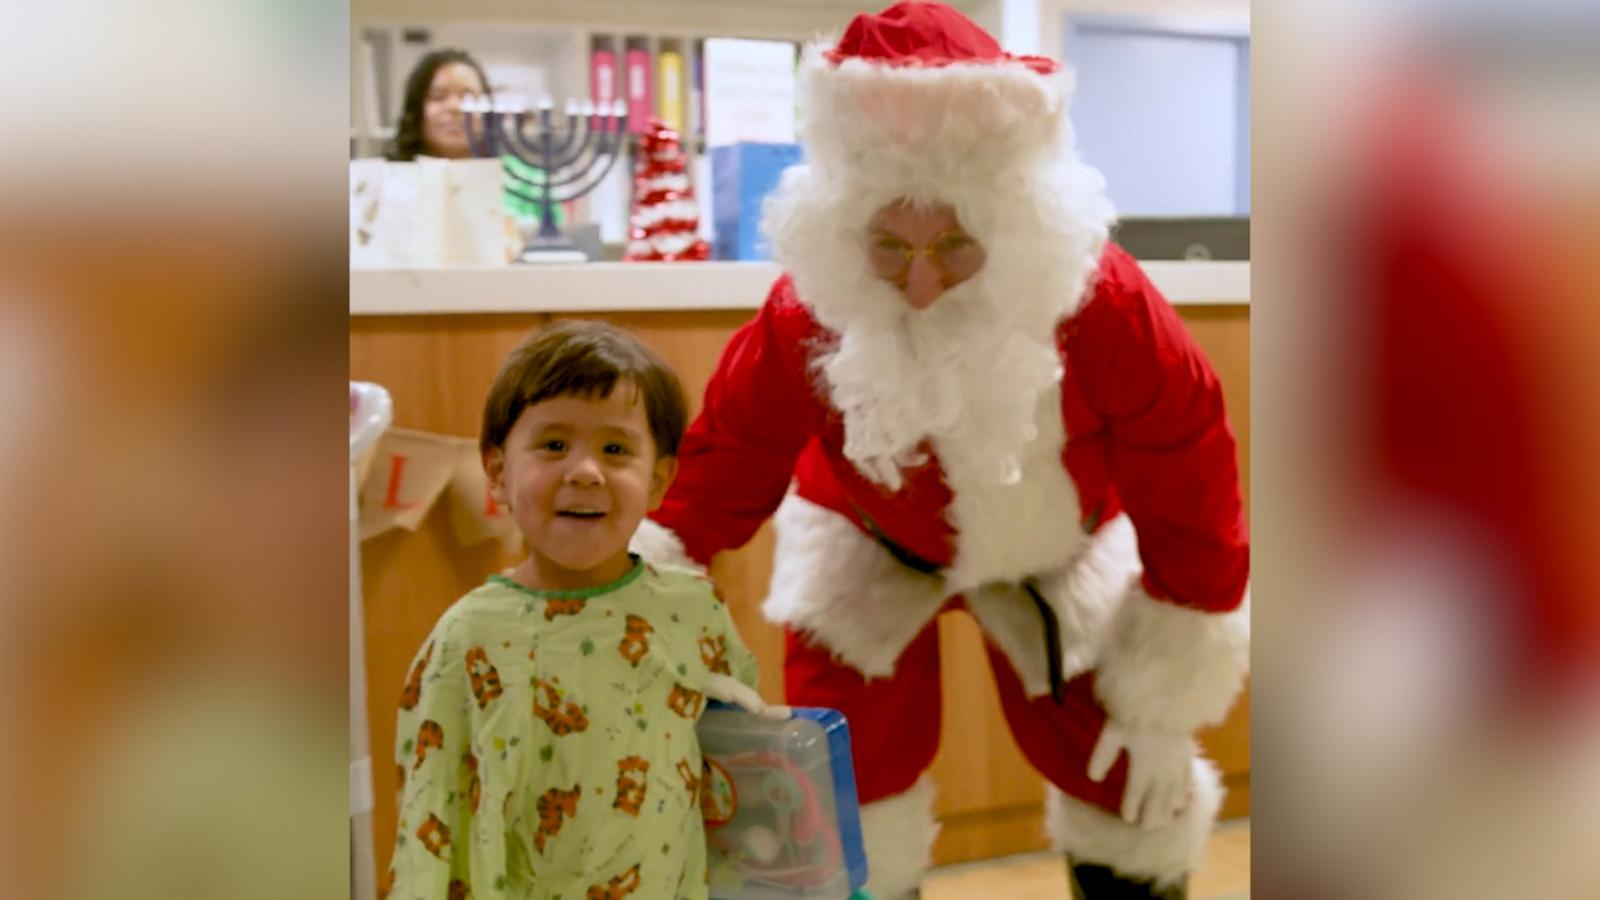 VIDEO: Watch the heartwarming moment a little boy runs up and hugs Santa Claus